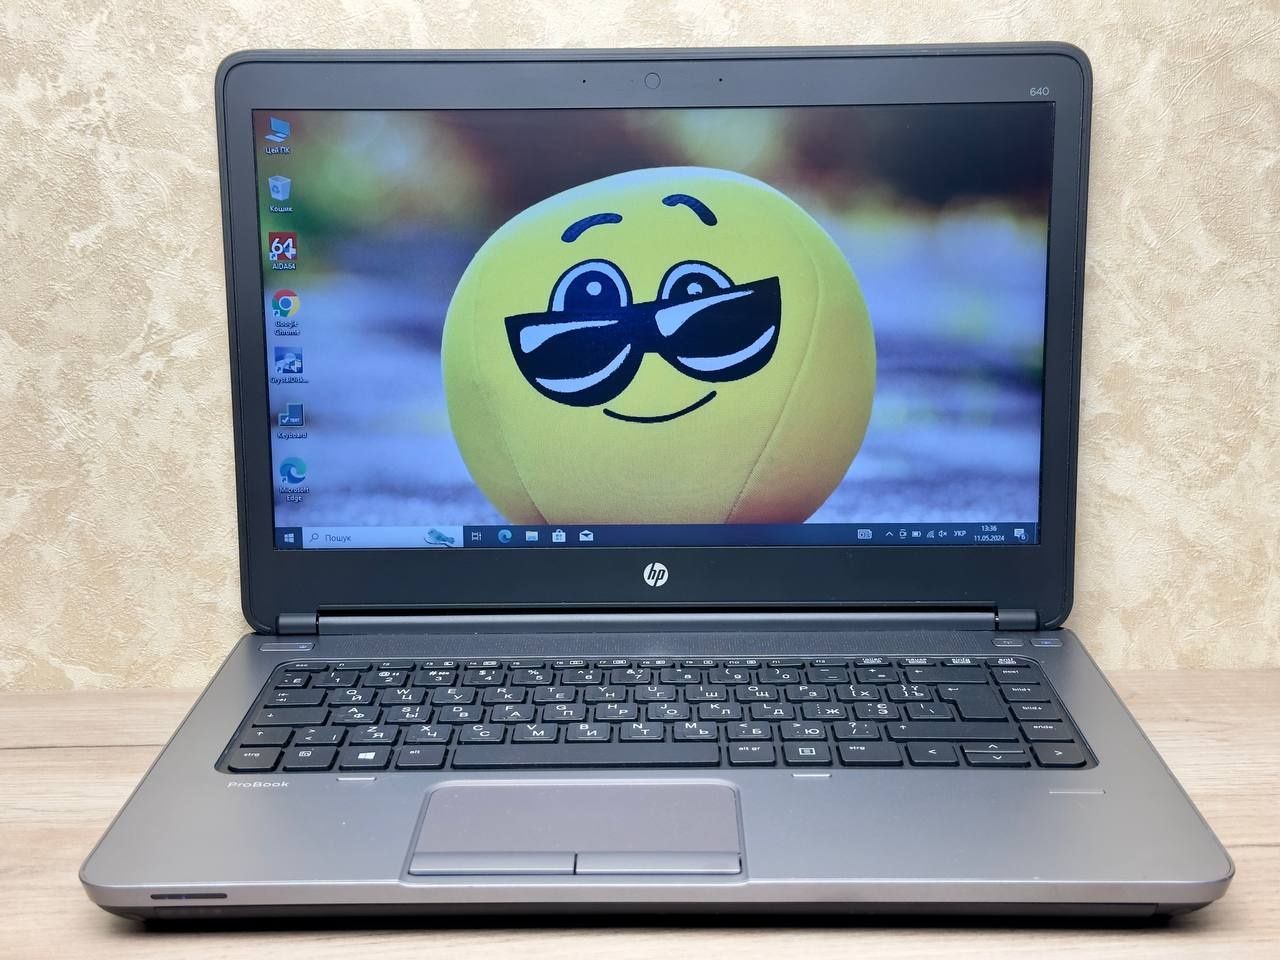 Ноутбук HP 640 G1 i5/8gb/ssd120 АКБ 3 години